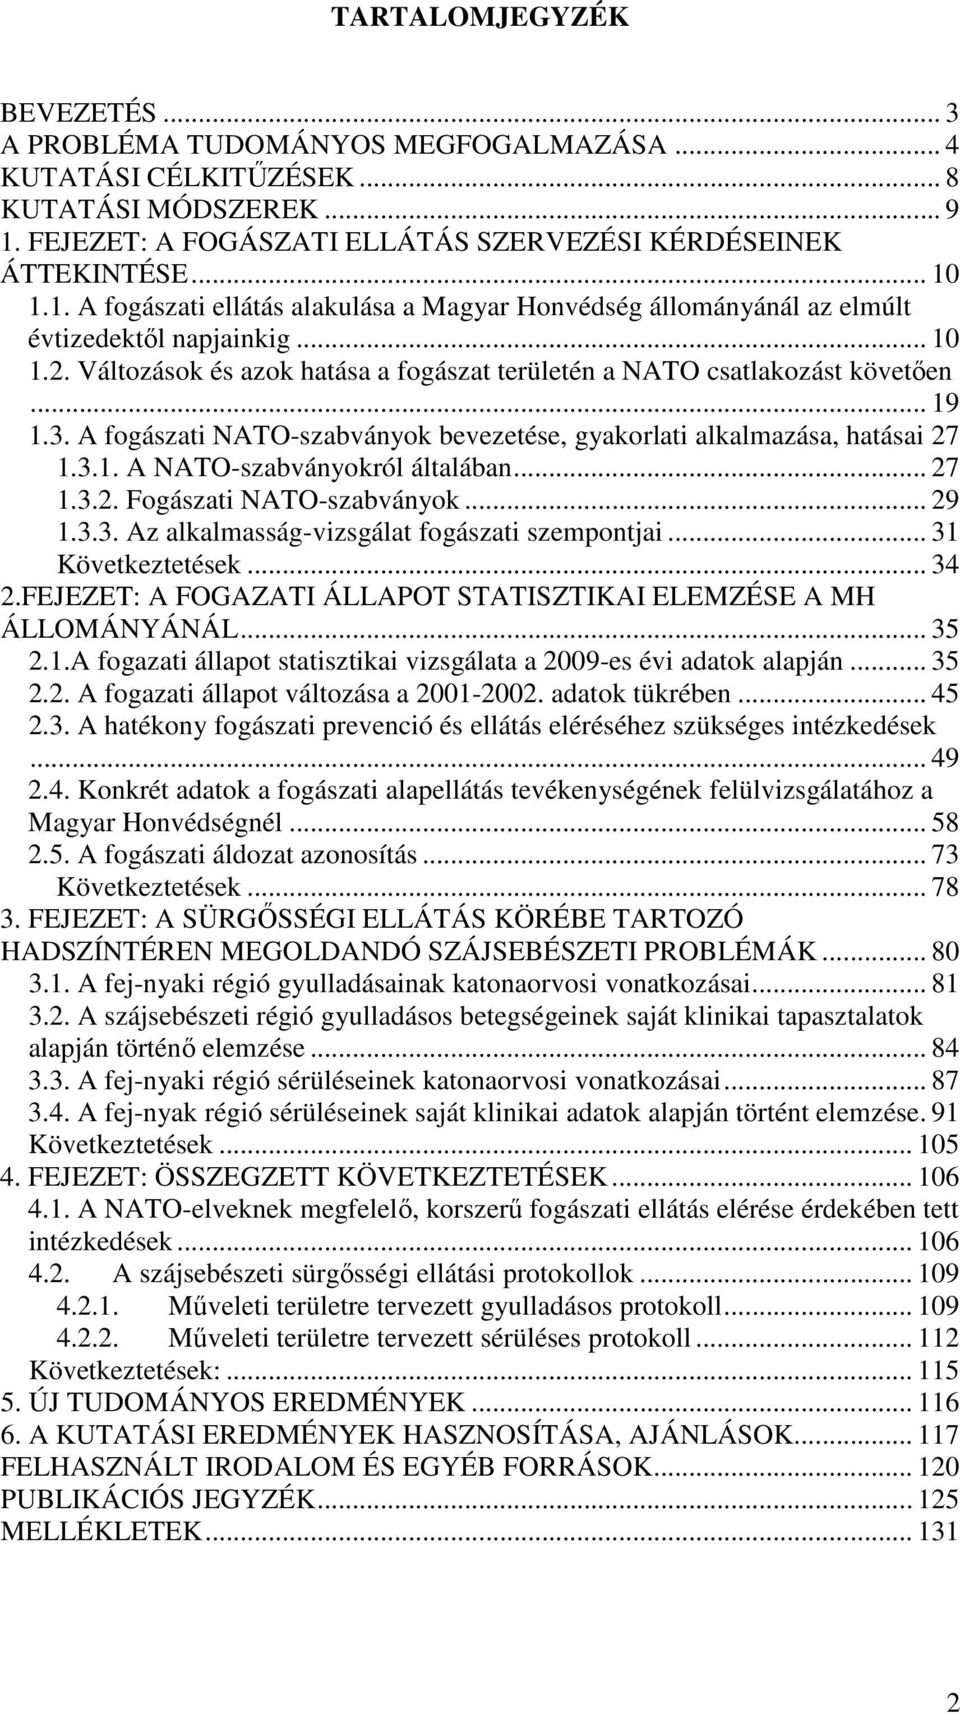 A fogászati NATO-szabványok bevezetése, gyakorlati alkalmazása, hatásai 27 1.3.1. A NATO-szabványokról általában... 27 1.3.2. Fogászati NATO-szabványok... 29 1.3.3. Az alkalmasság-vizsgálat fogászati szempontjai.